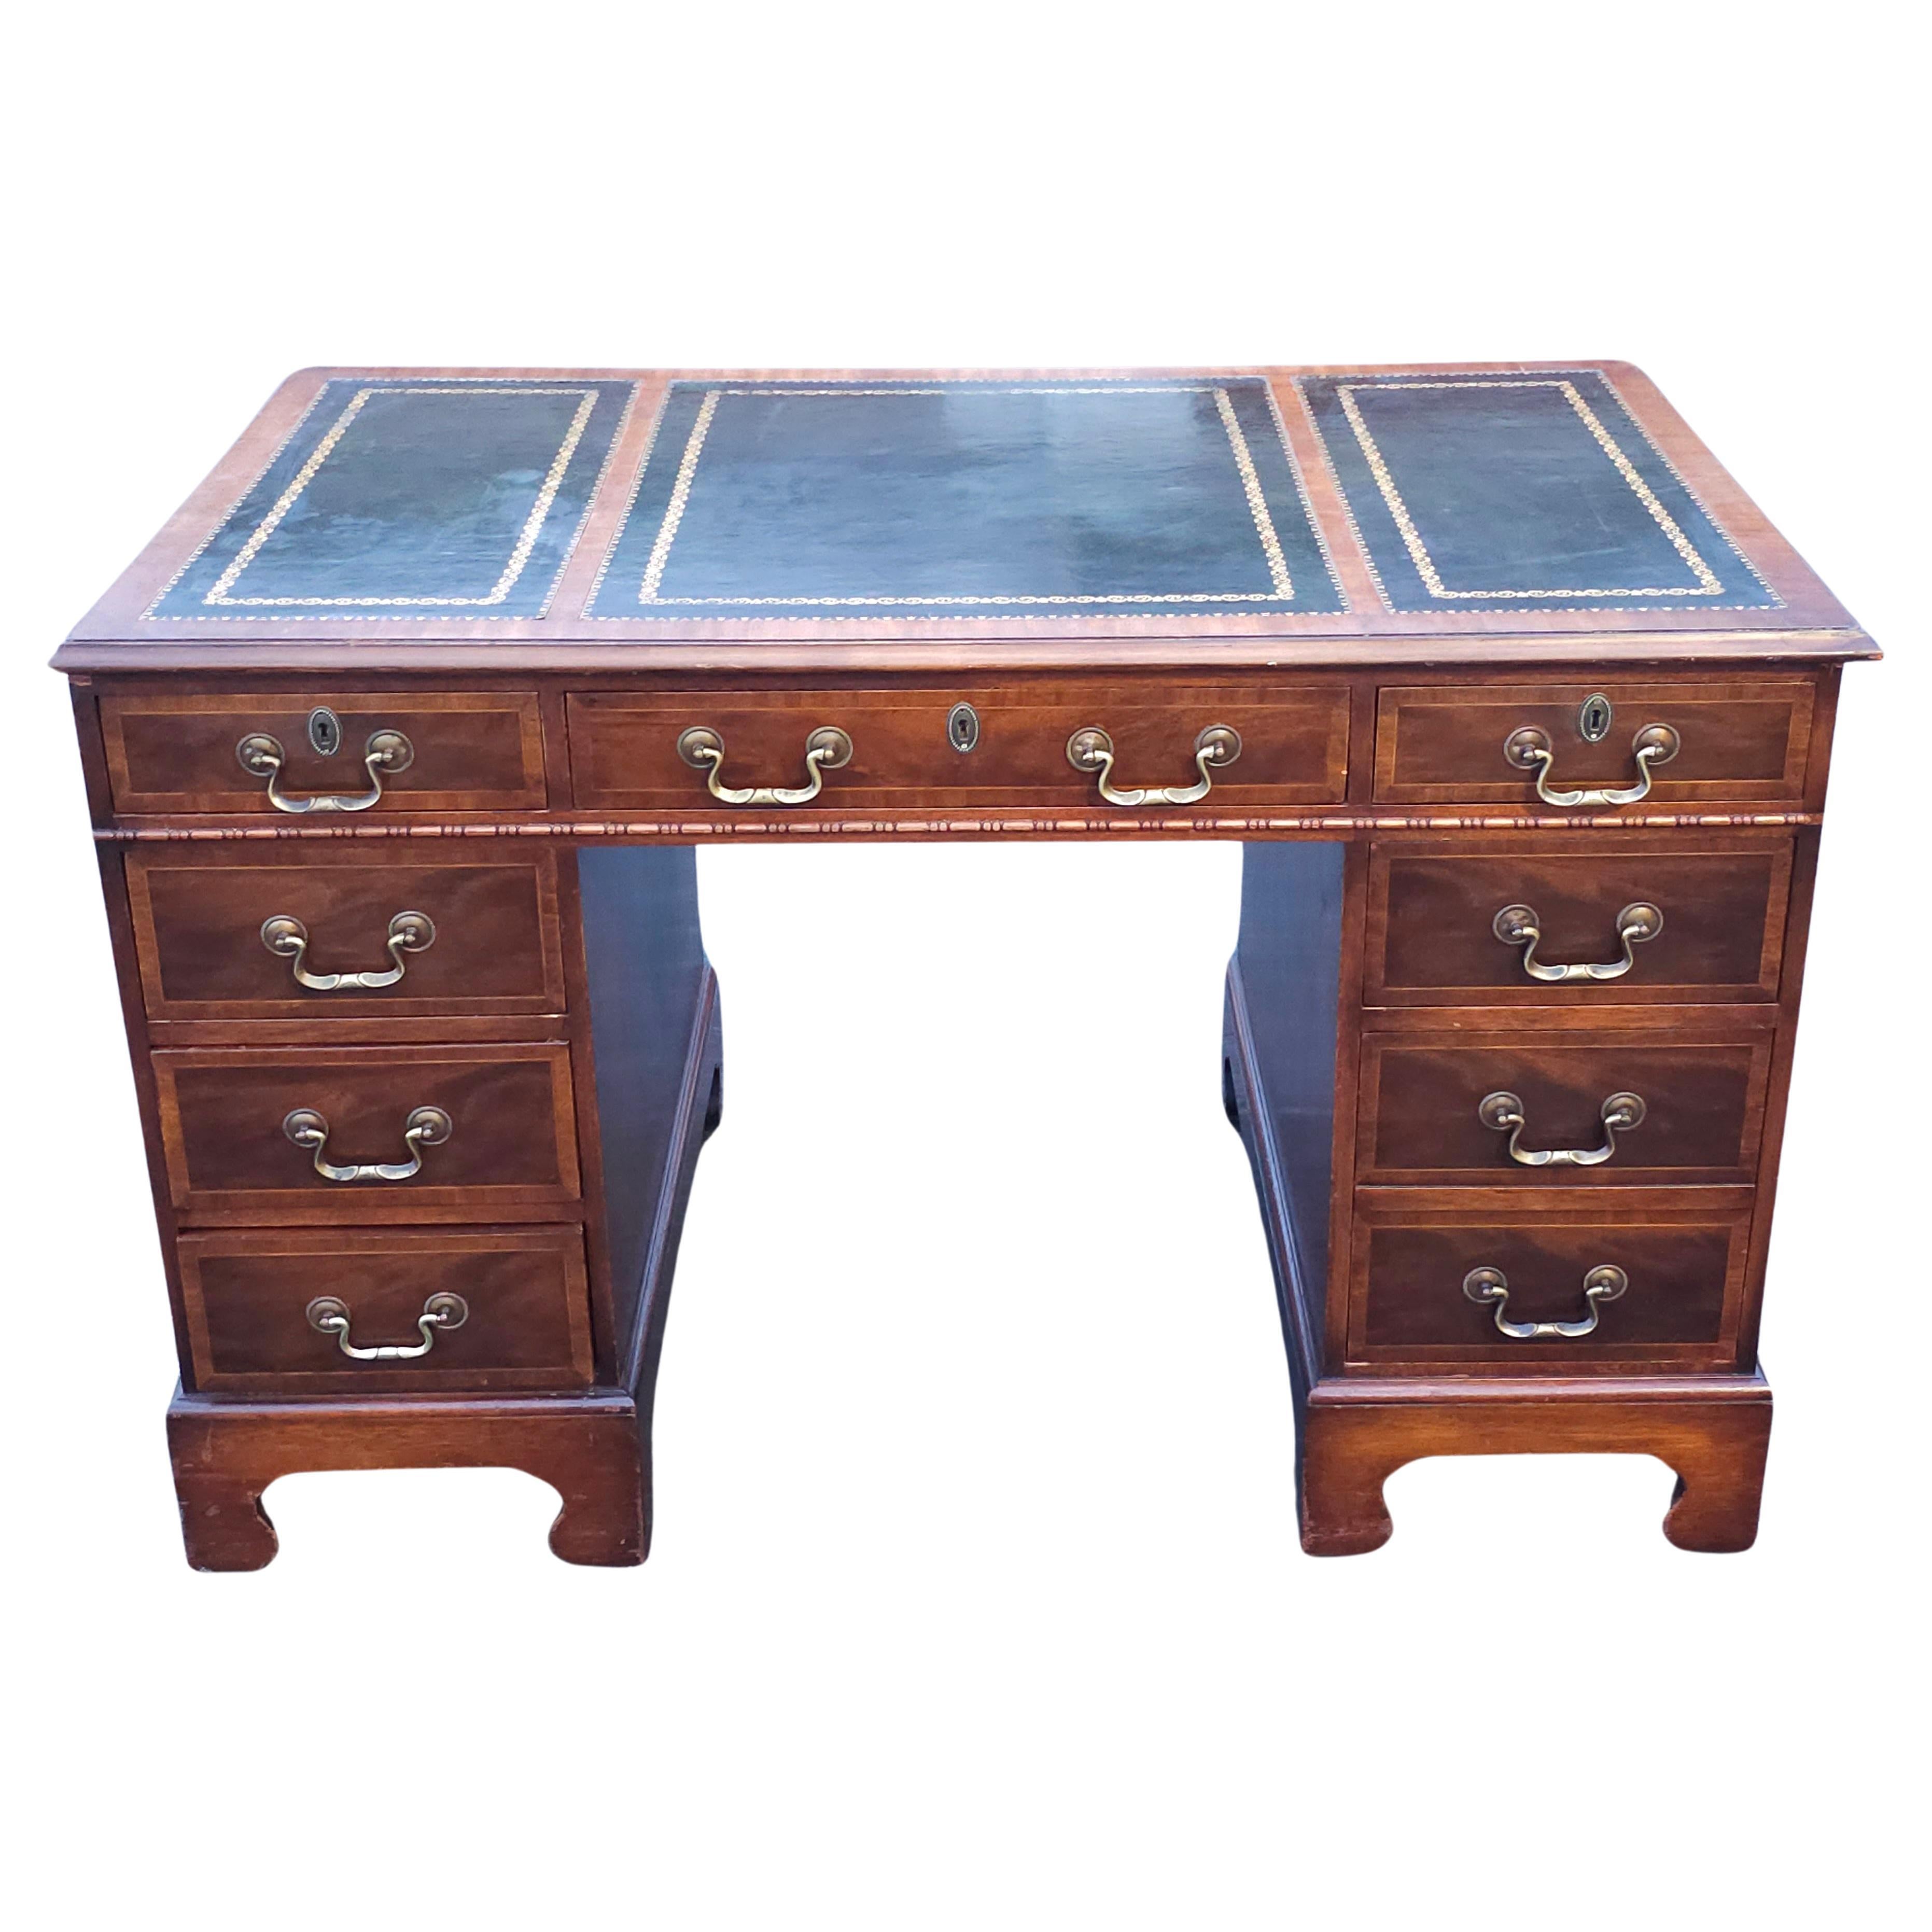 Eine seltene Hespeler Furniture Company Chippendale Inlaid Mahagoni und Tooled grünem Leder und Stenciled Top Schreibtisch. 48,5 